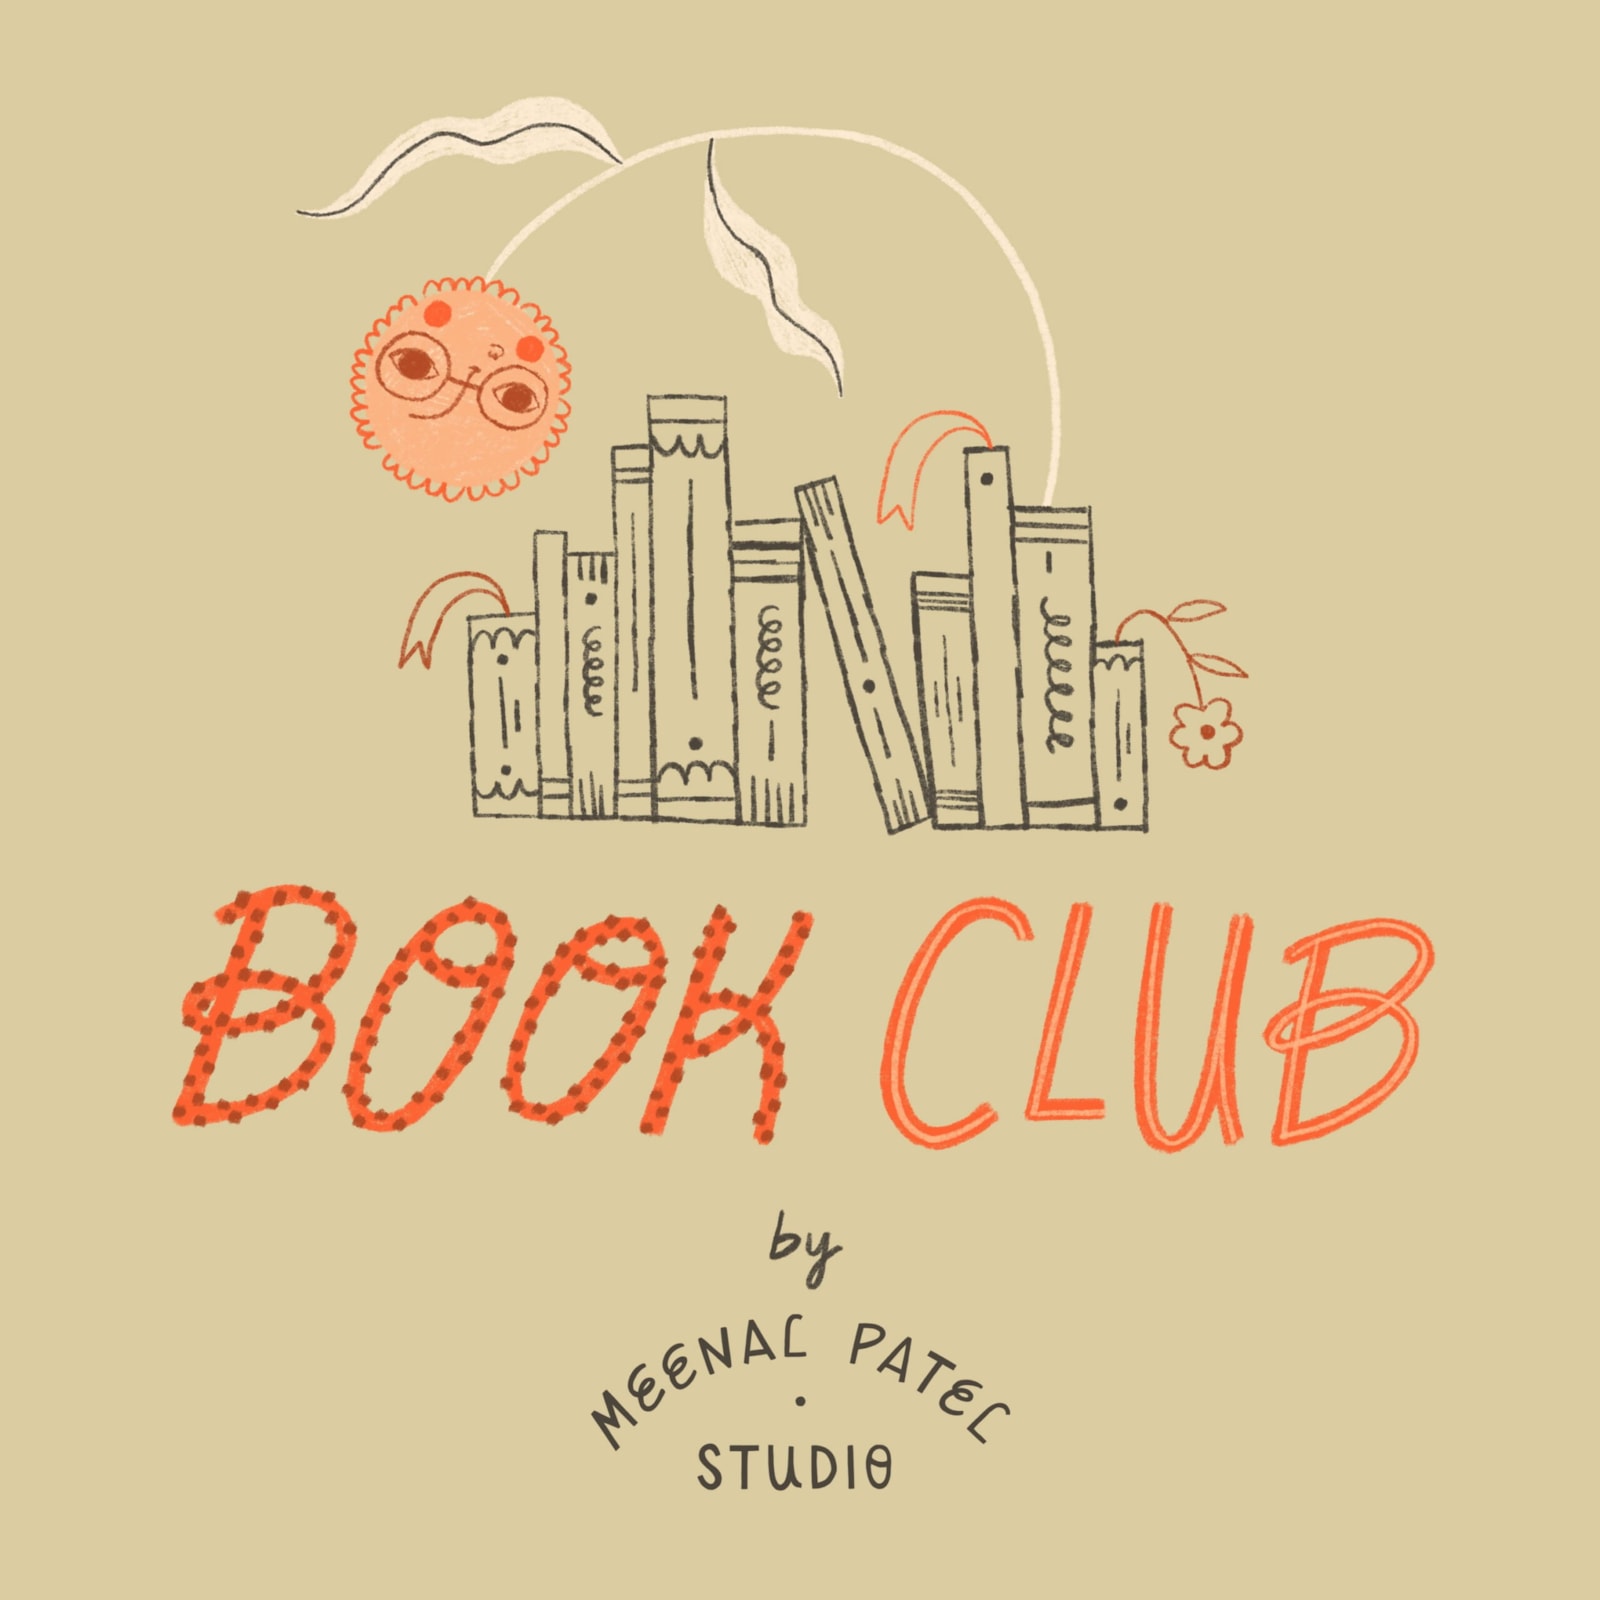 Book Club | Maneel Patel